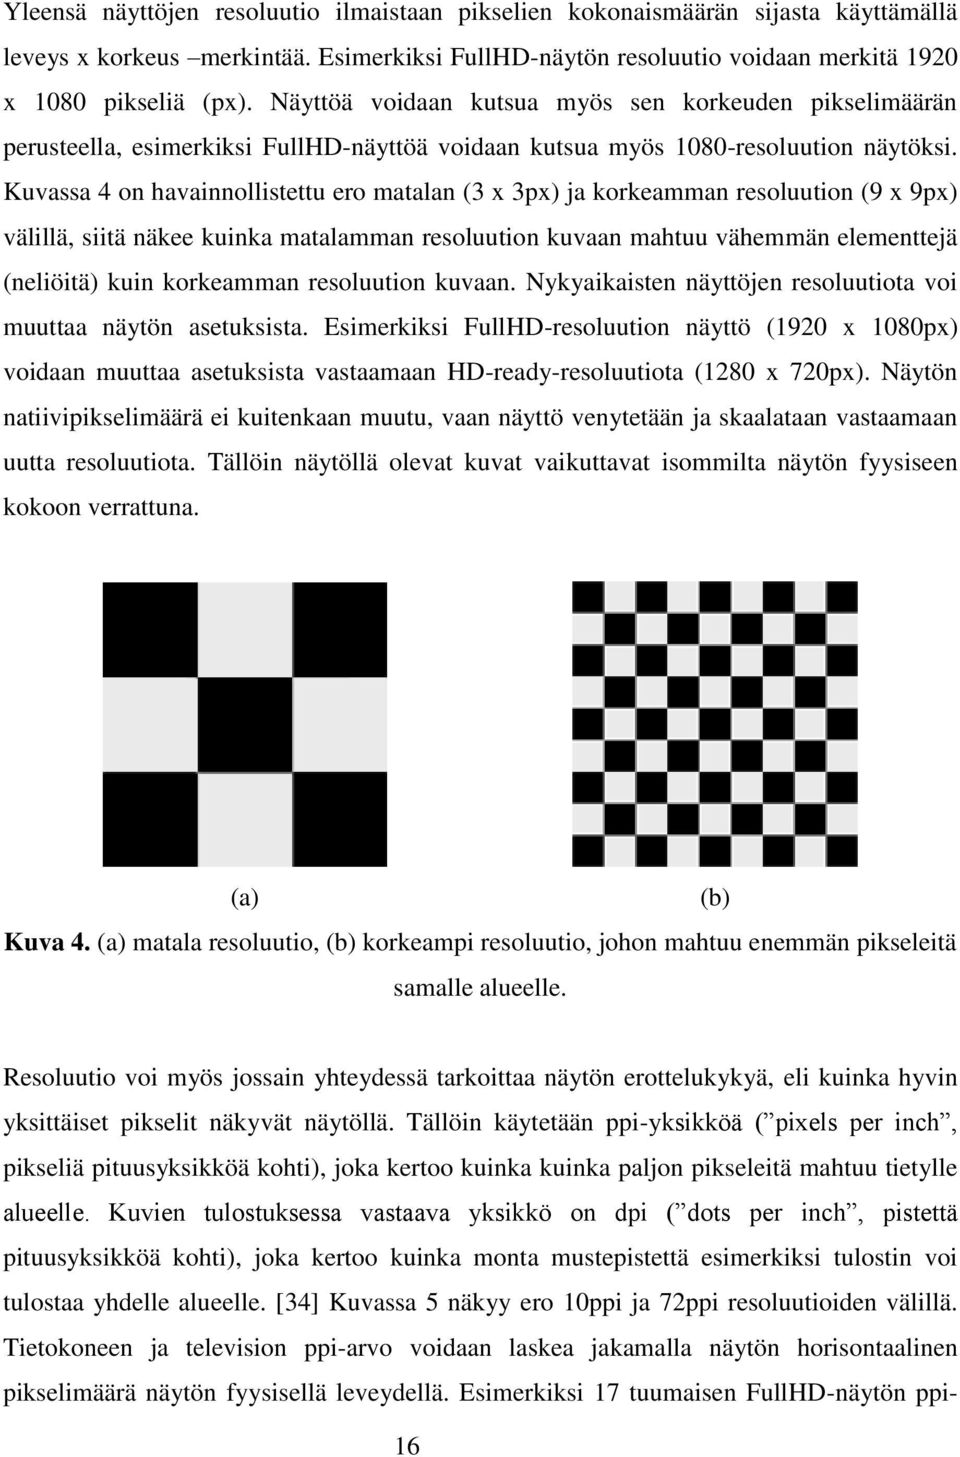 Kuvassa 4 on havainnollistettu ero matalan (3 x 3px) ja korkeamman resoluution (9 x 9px) välillä, siitä näkee kuinka matalamman resoluution kuvaan mahtuu vähemmän elementtejä (neliöitä) kuin